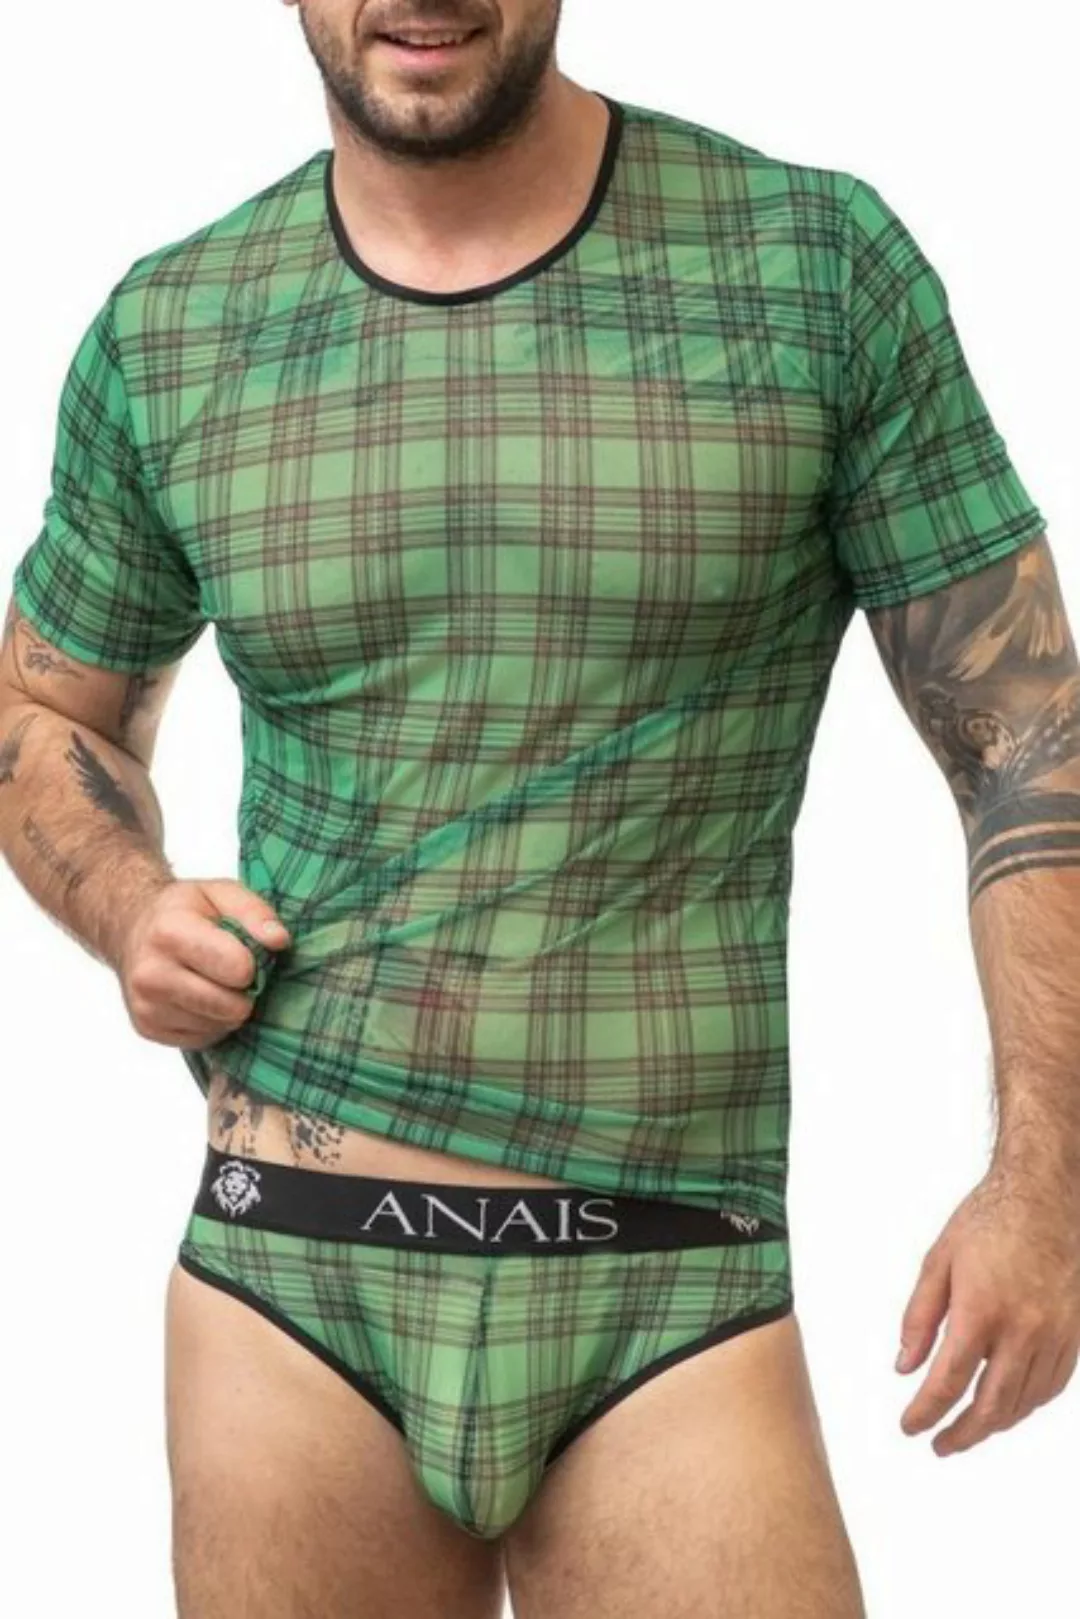 Anais for Men T-Shirt in grün/schwarz - 2XL günstig online kaufen